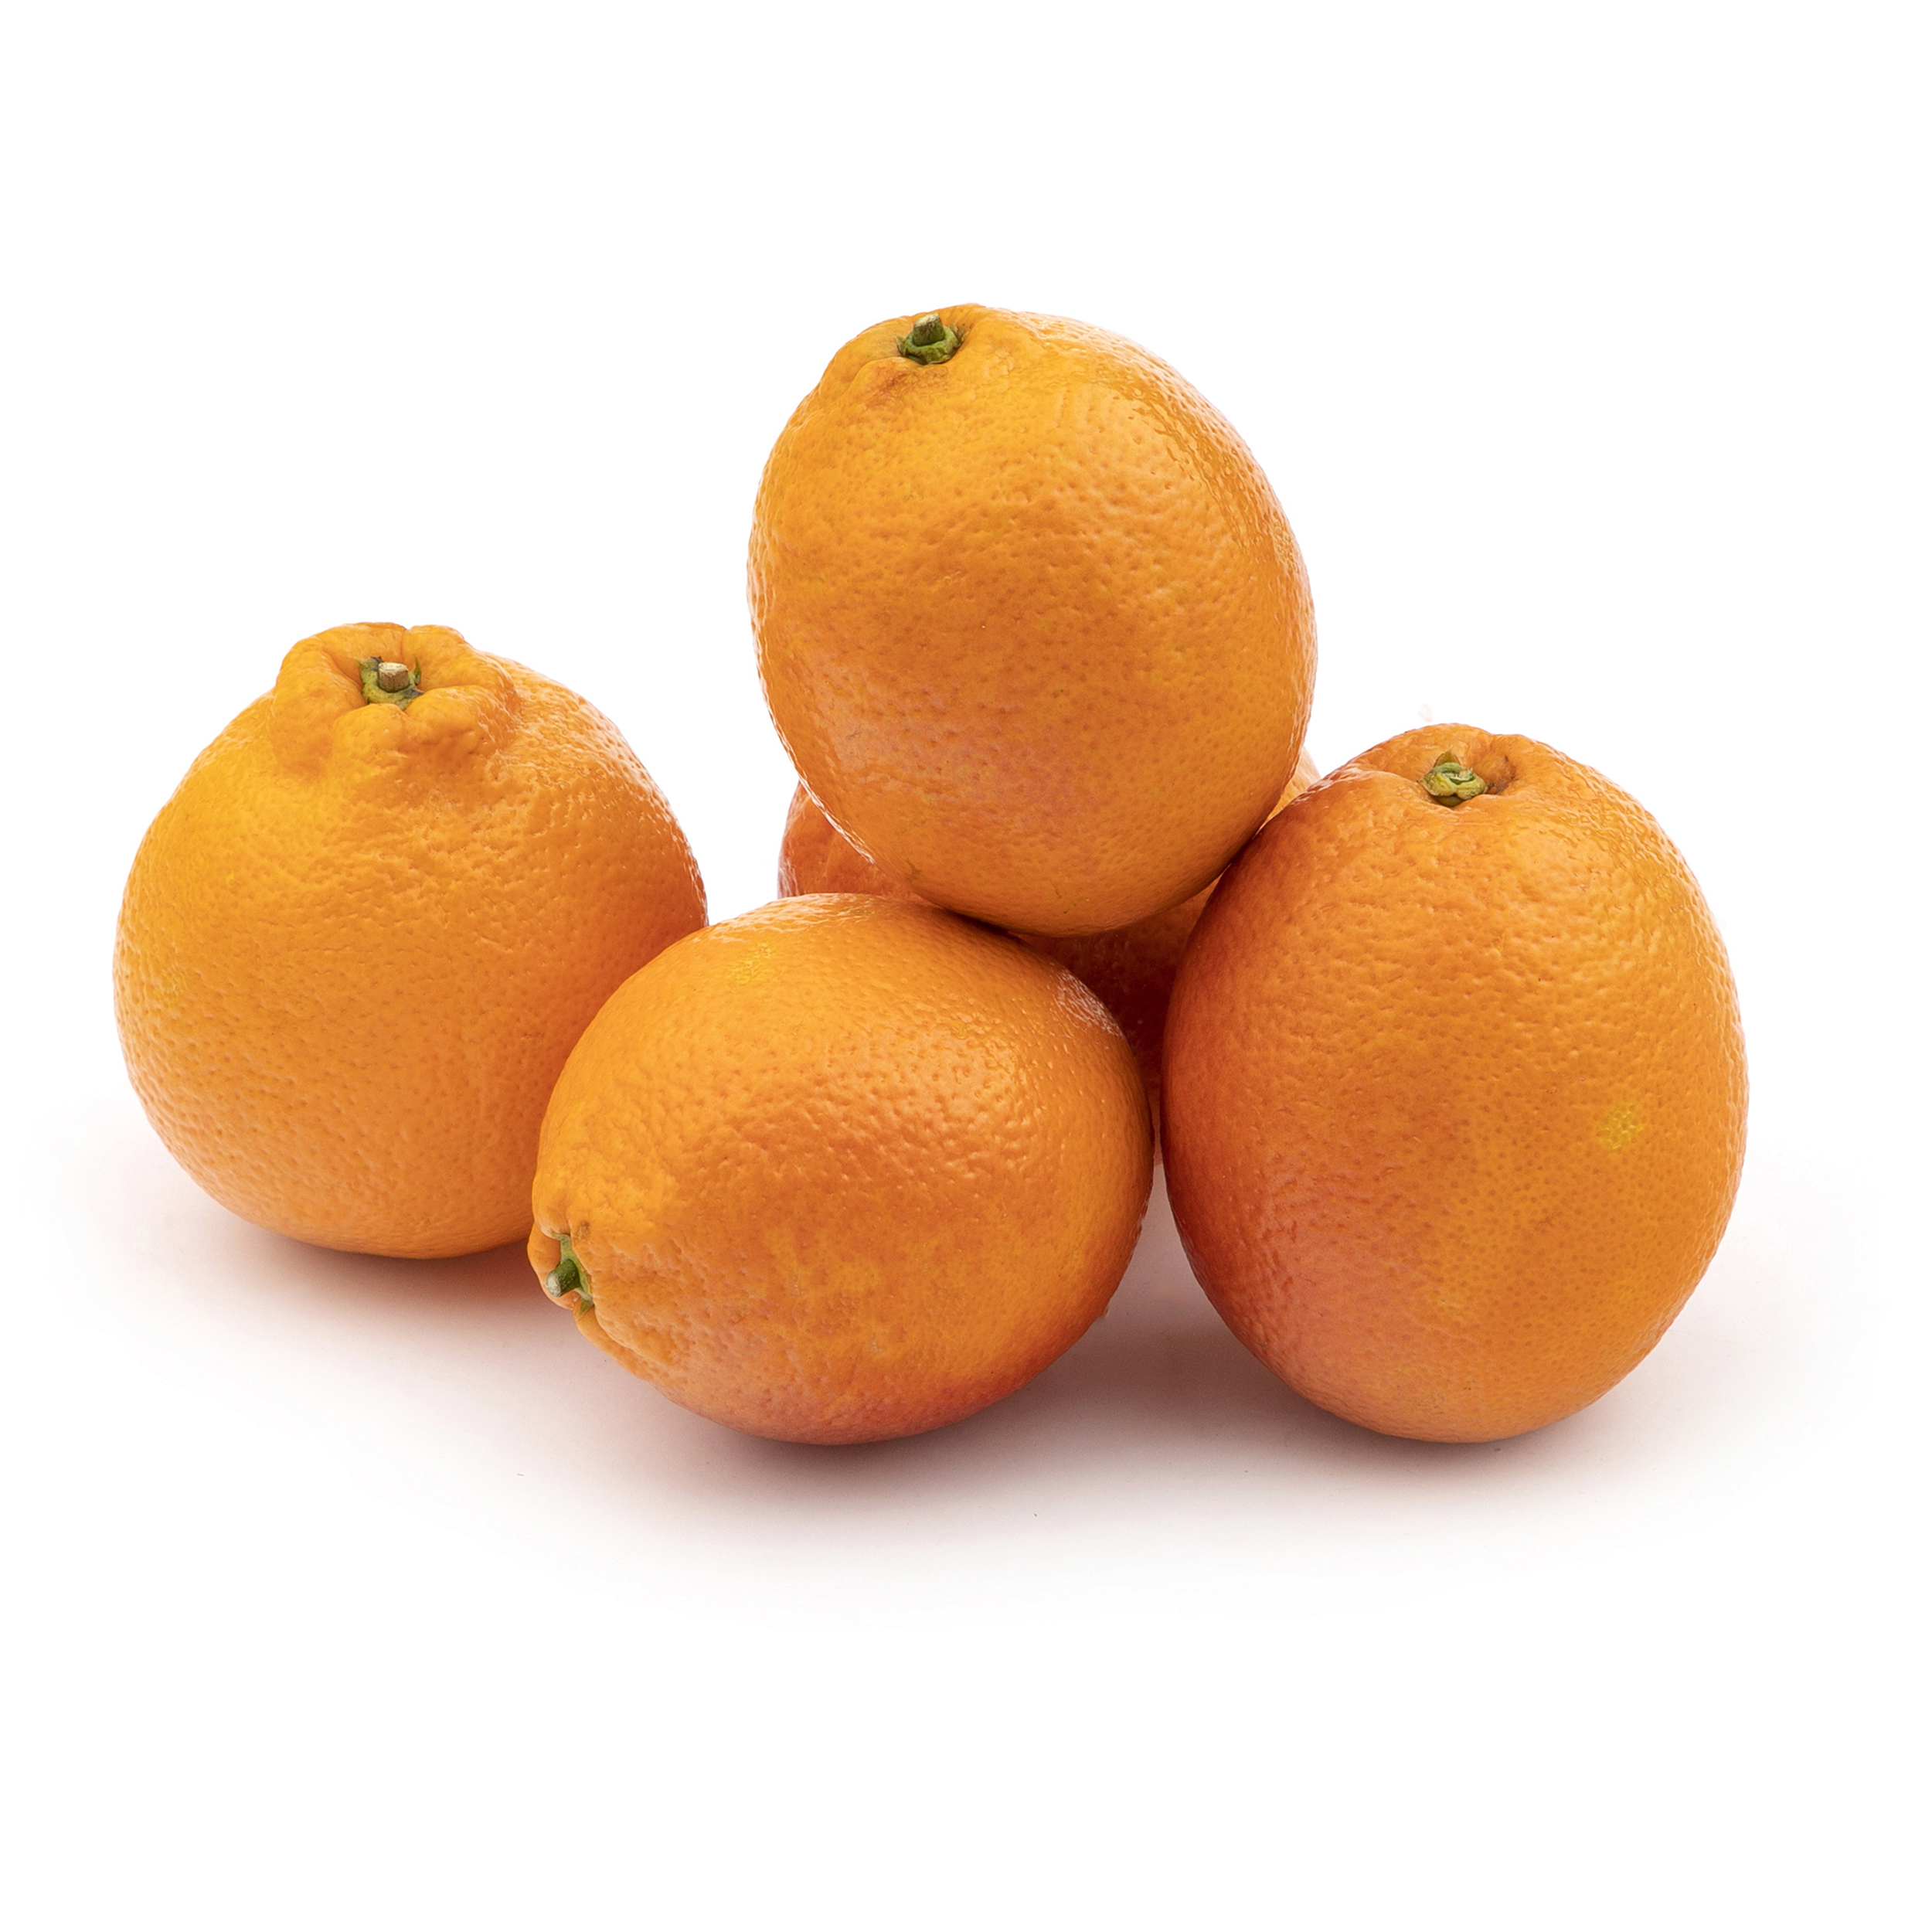 نقد و بررسی پرتقال تو سرخ Fresh مقدار 1 کیلوگرم توسط خریداران